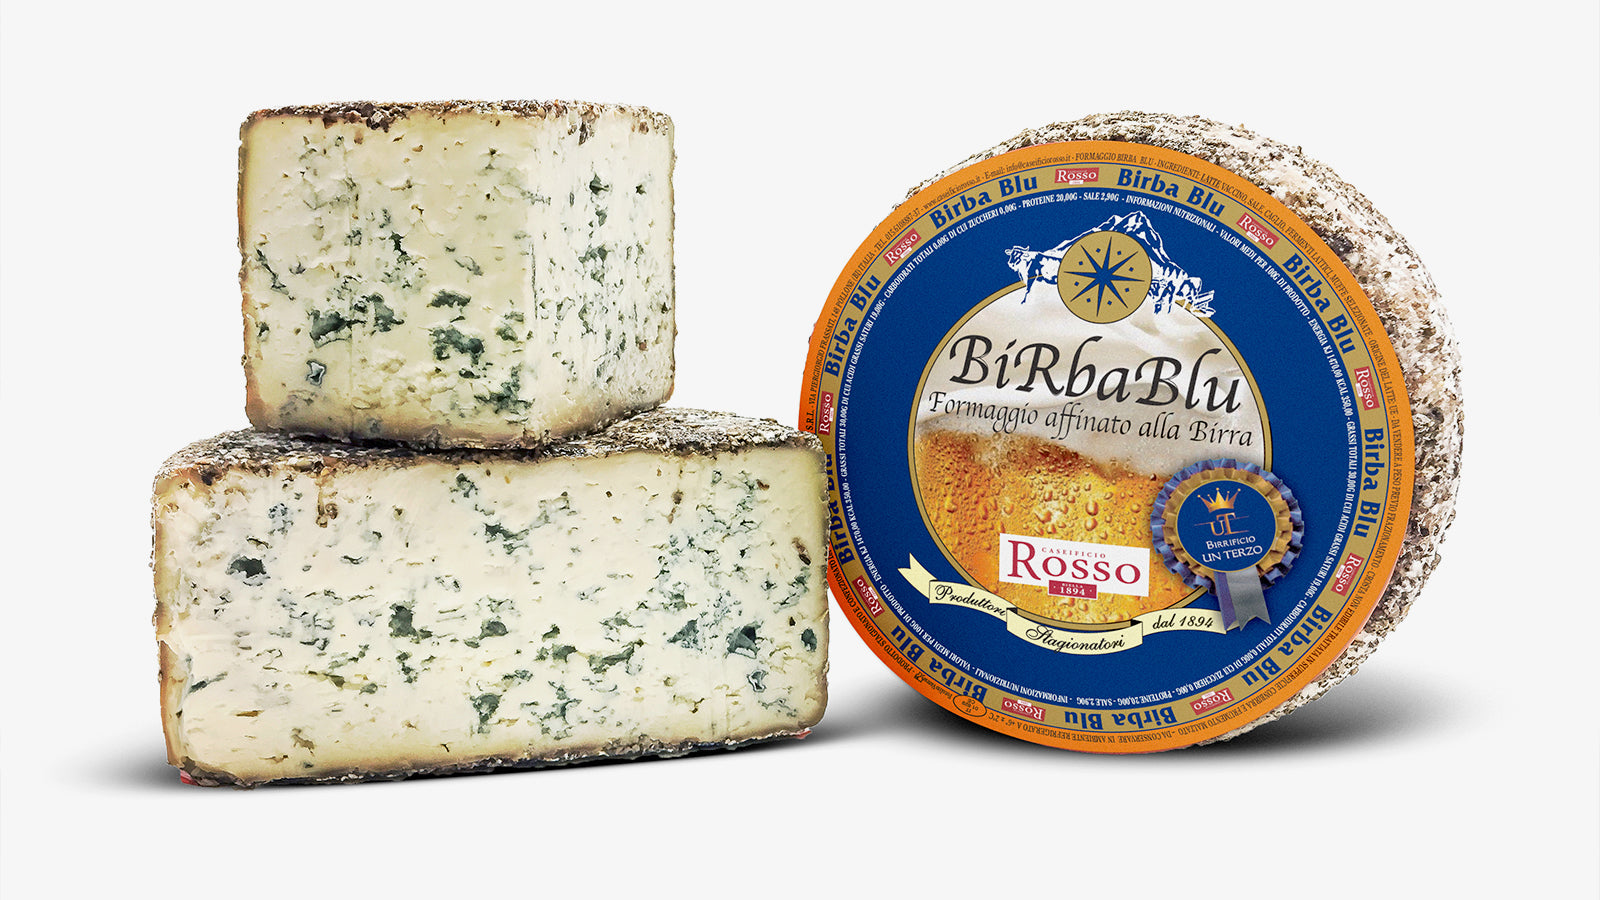 Birba blu formaggio caseificio rosso premiato wca21 world cheese awards argento